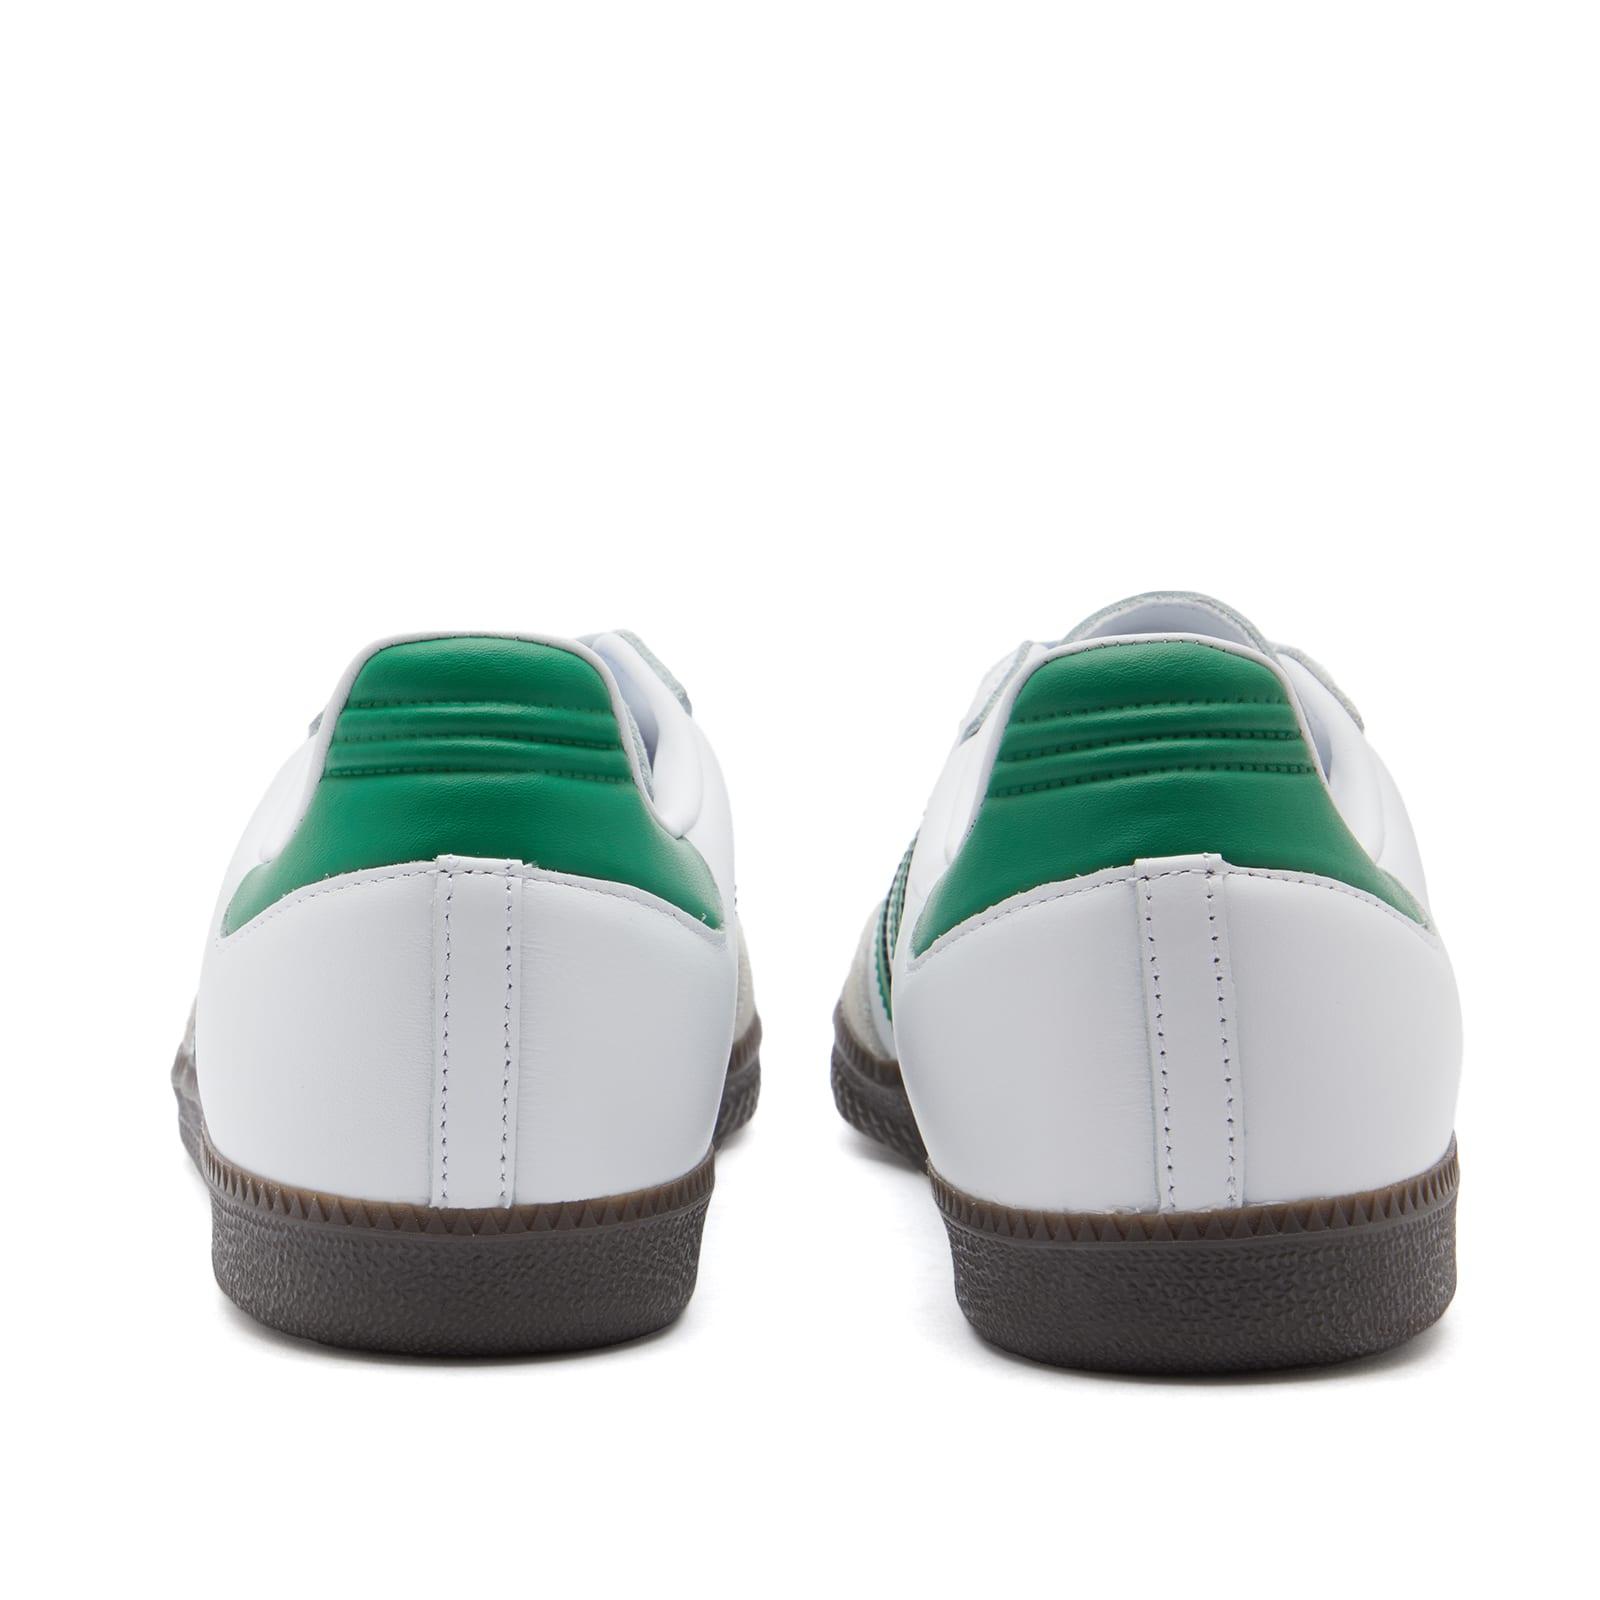 adidas Samba OG Green/white/gum